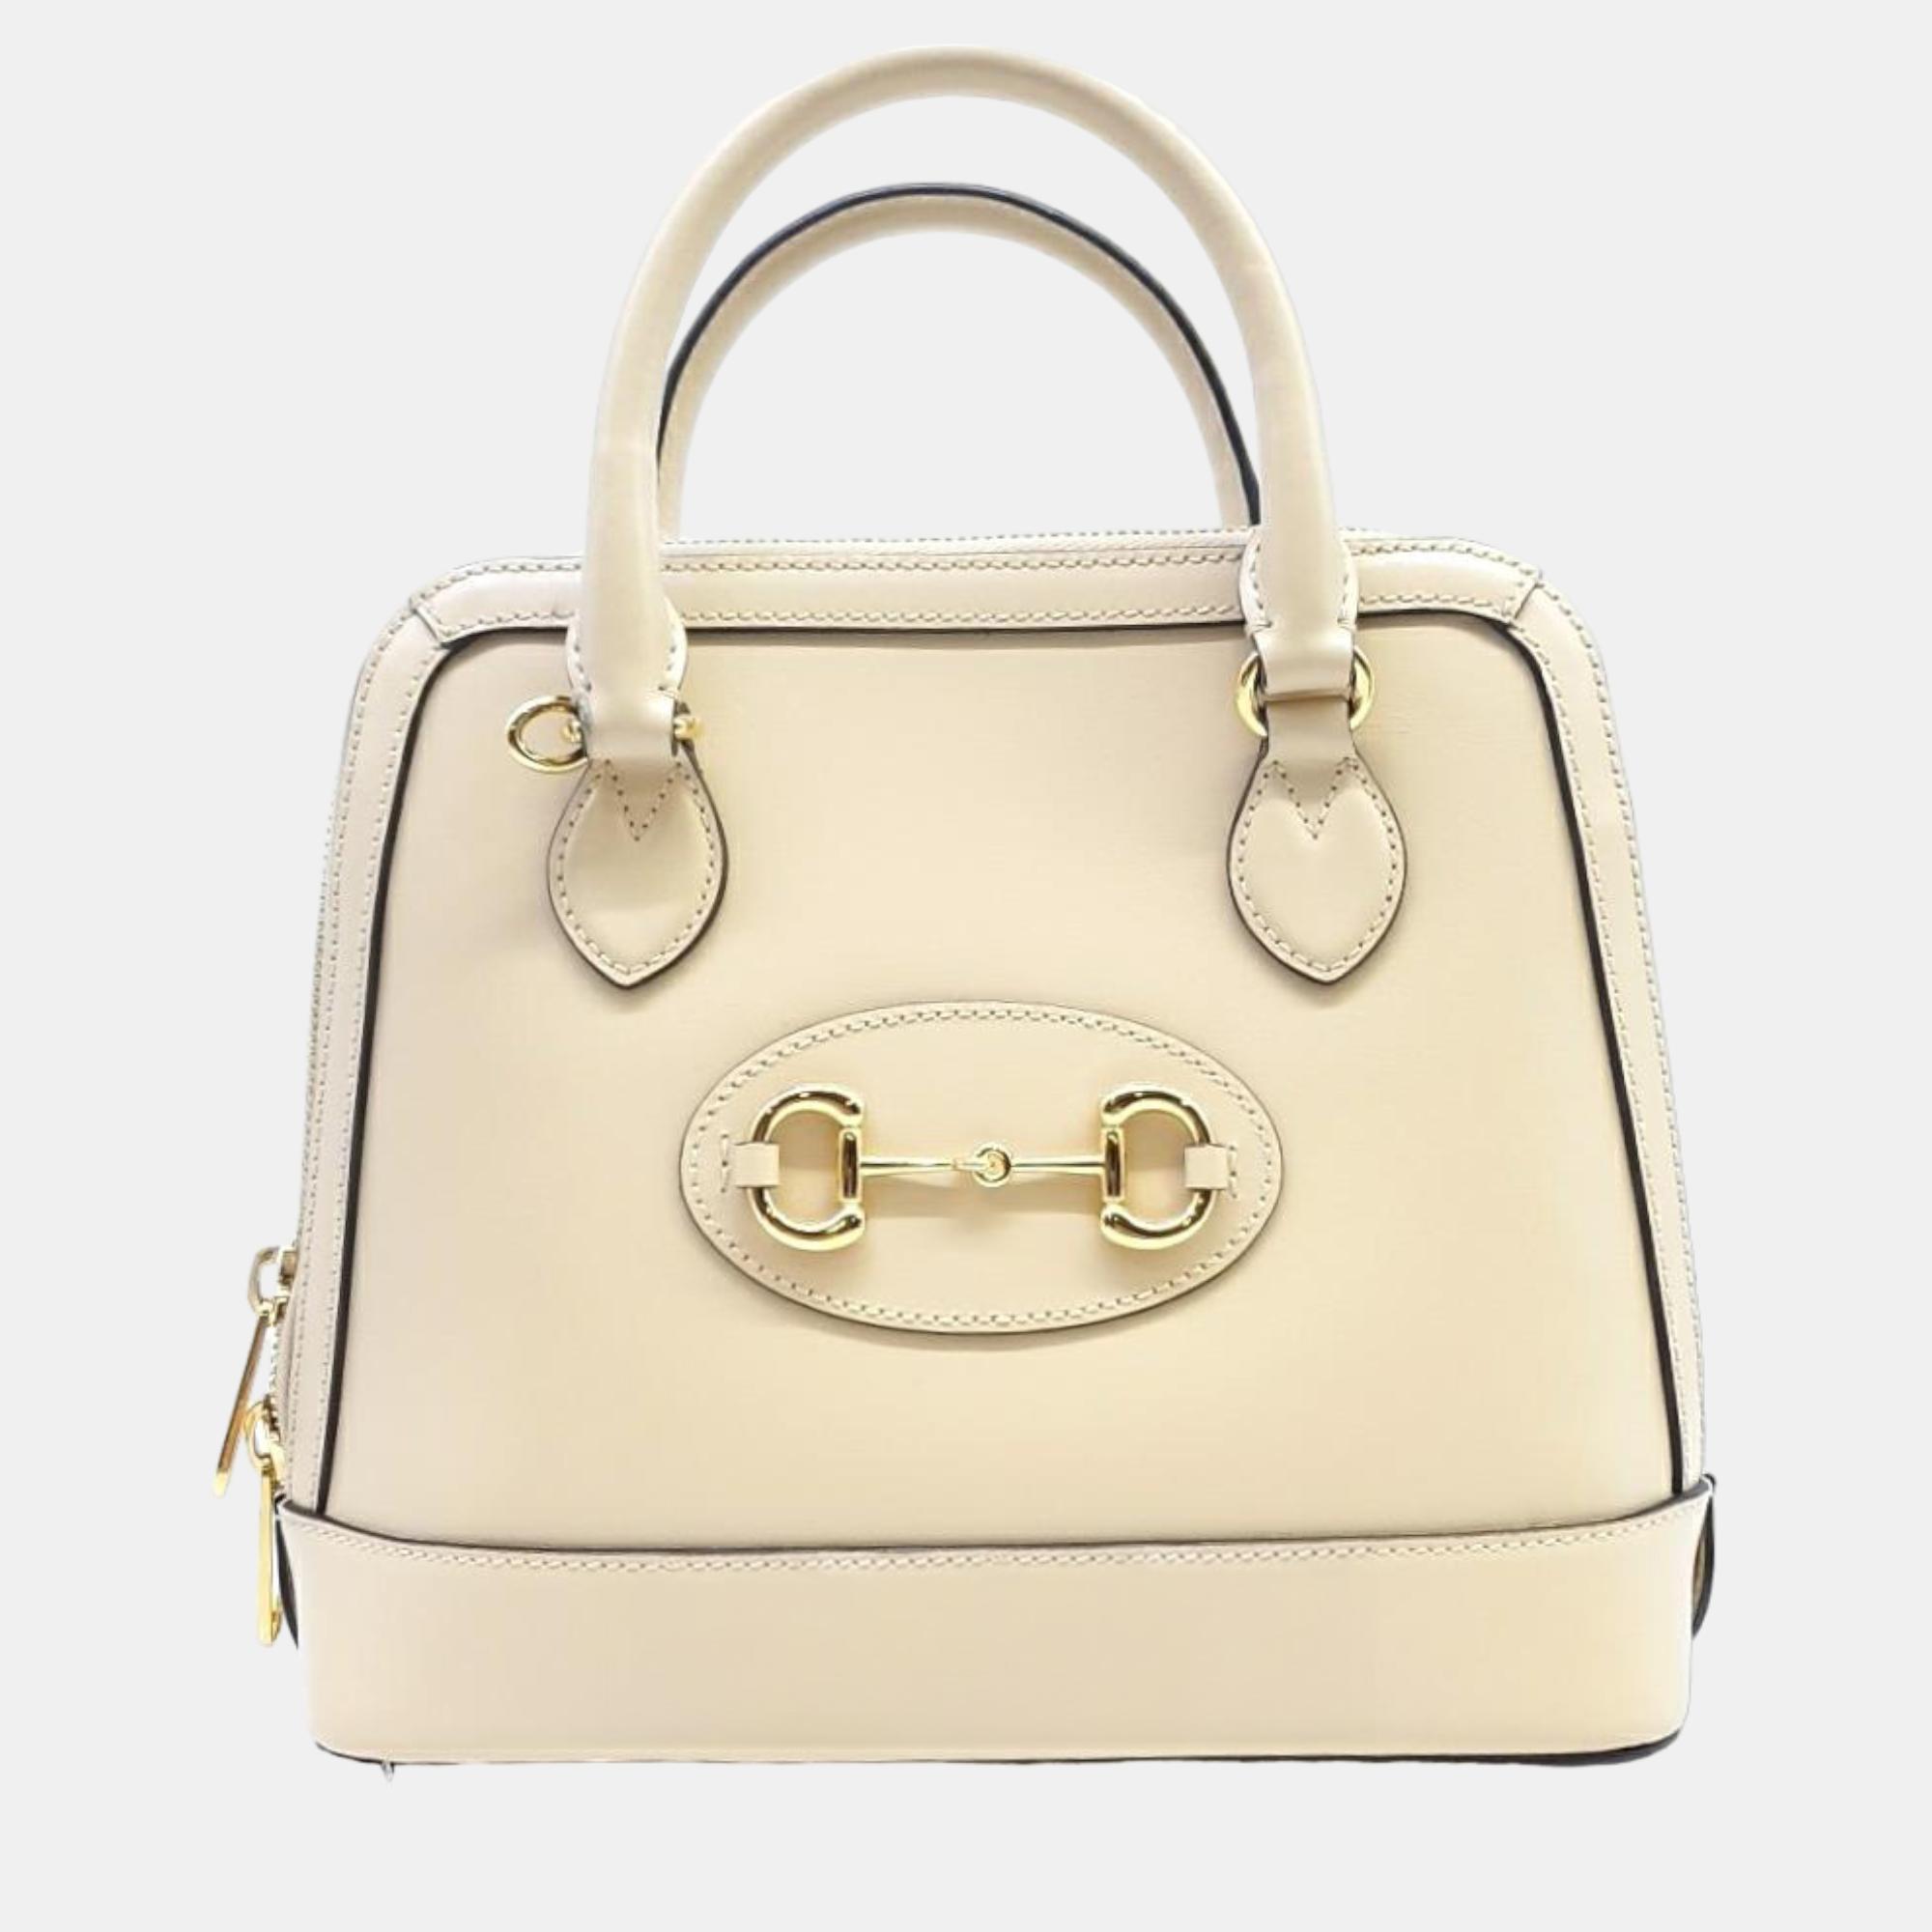 Gucci 1955 Horsebit Top Handle Bag Small (621220)